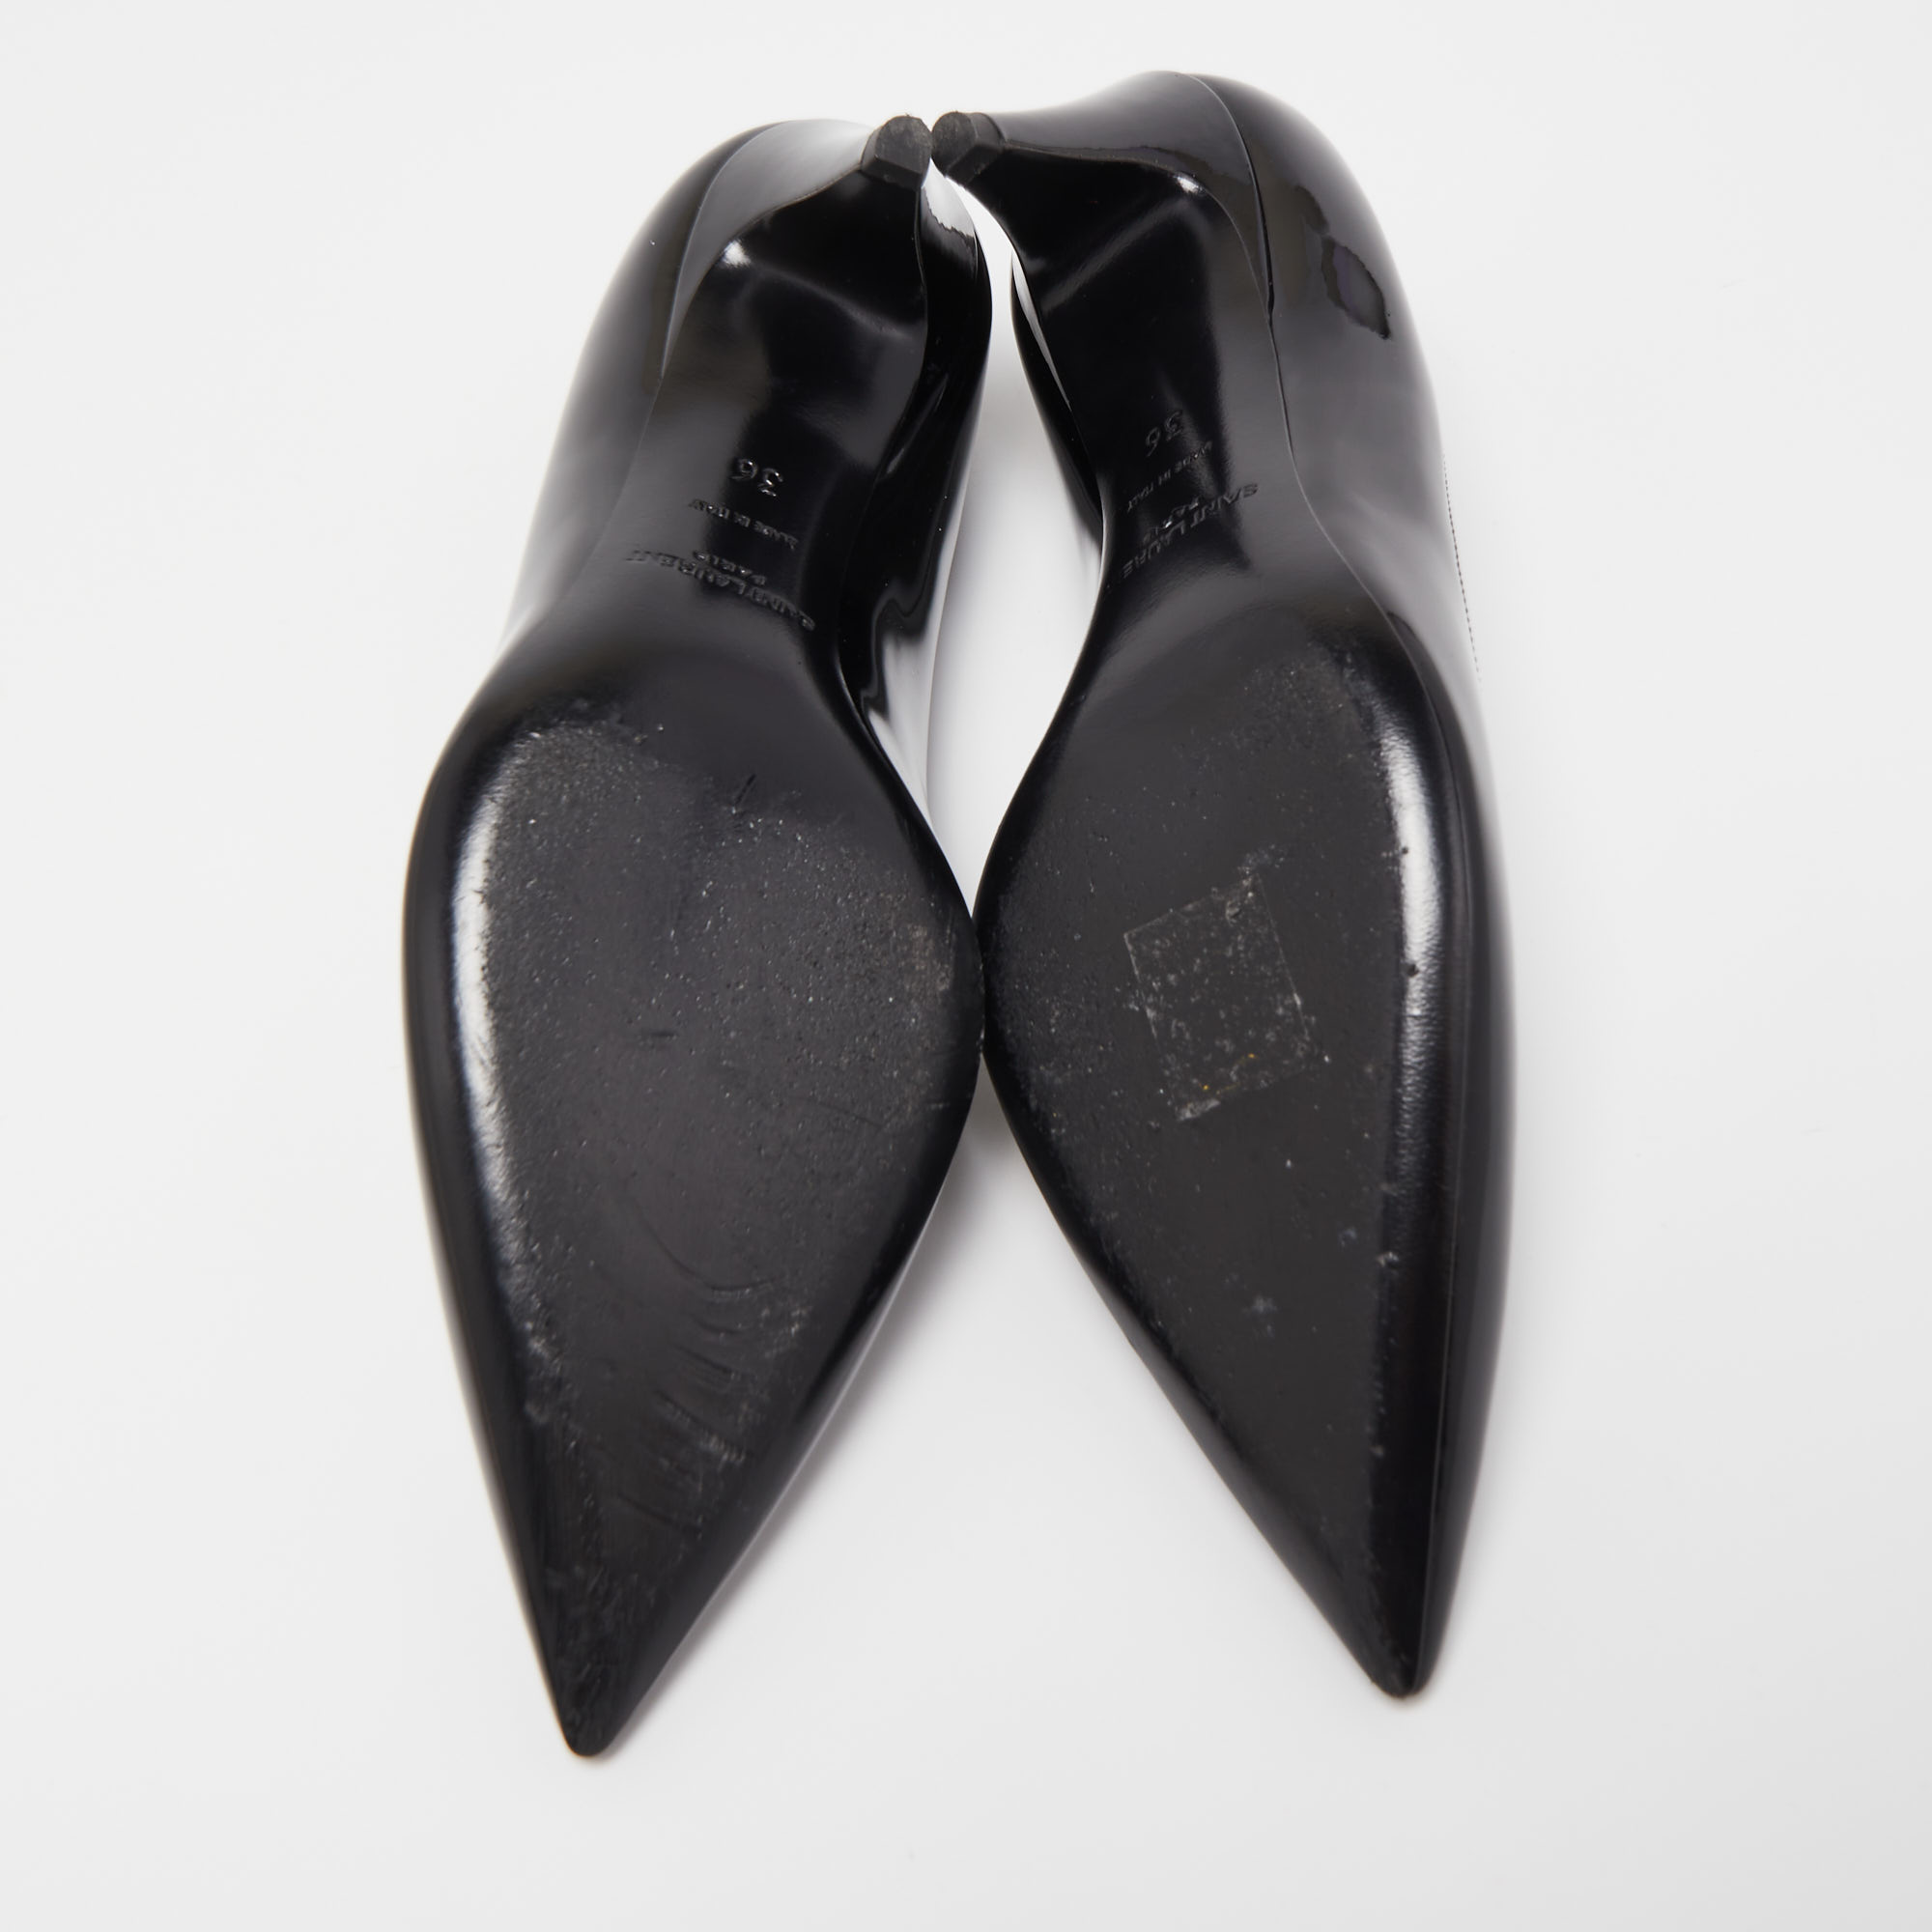 Saint Laurent Black Patent Leather Charlotte Pointed Pumps Size 36